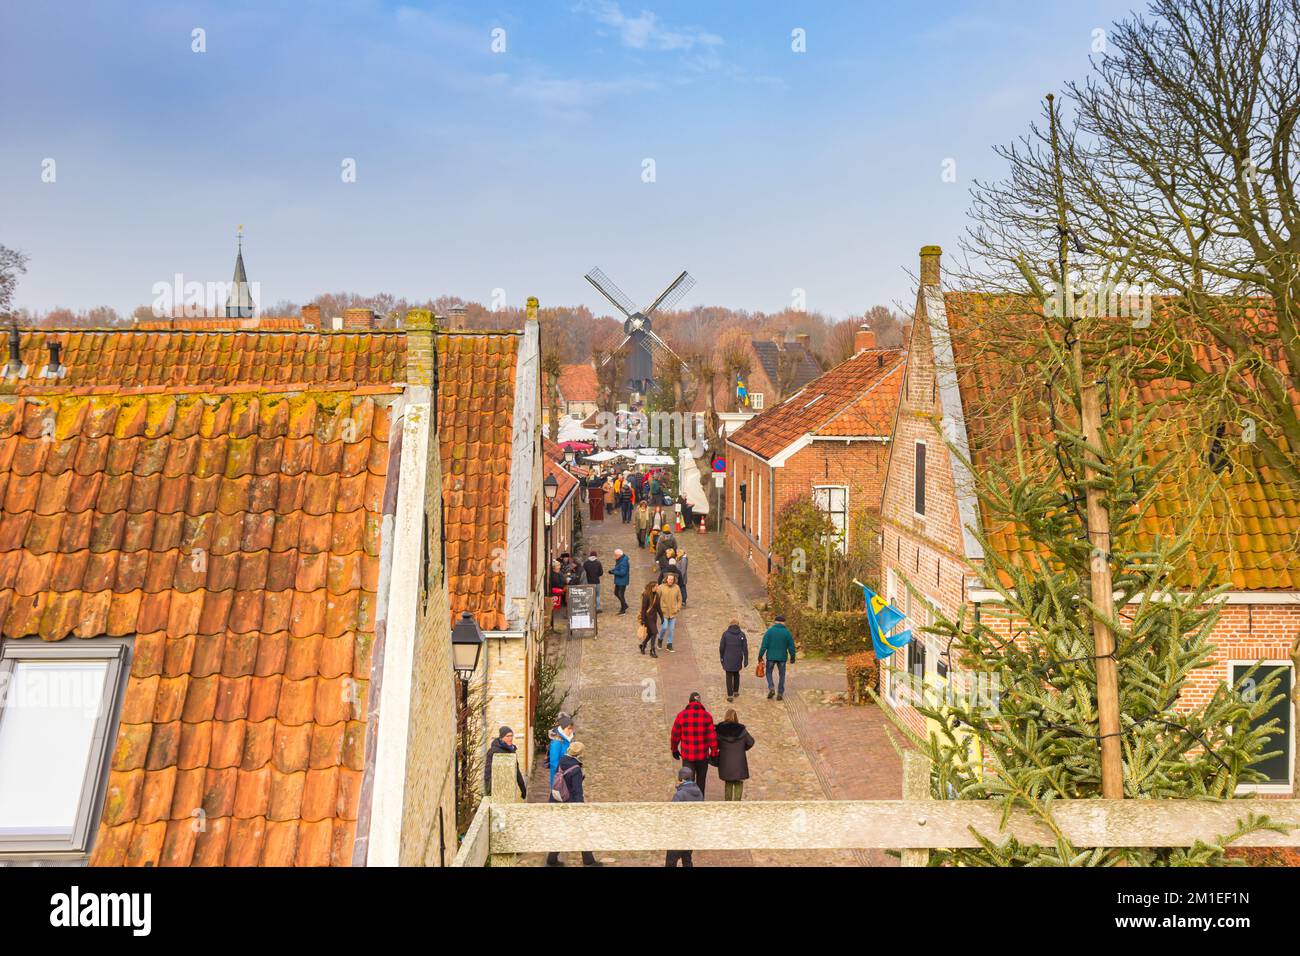 Calle con casas históricas que conducen al mercado de Navidad en Bourtange, Países Bajos Foto de stock